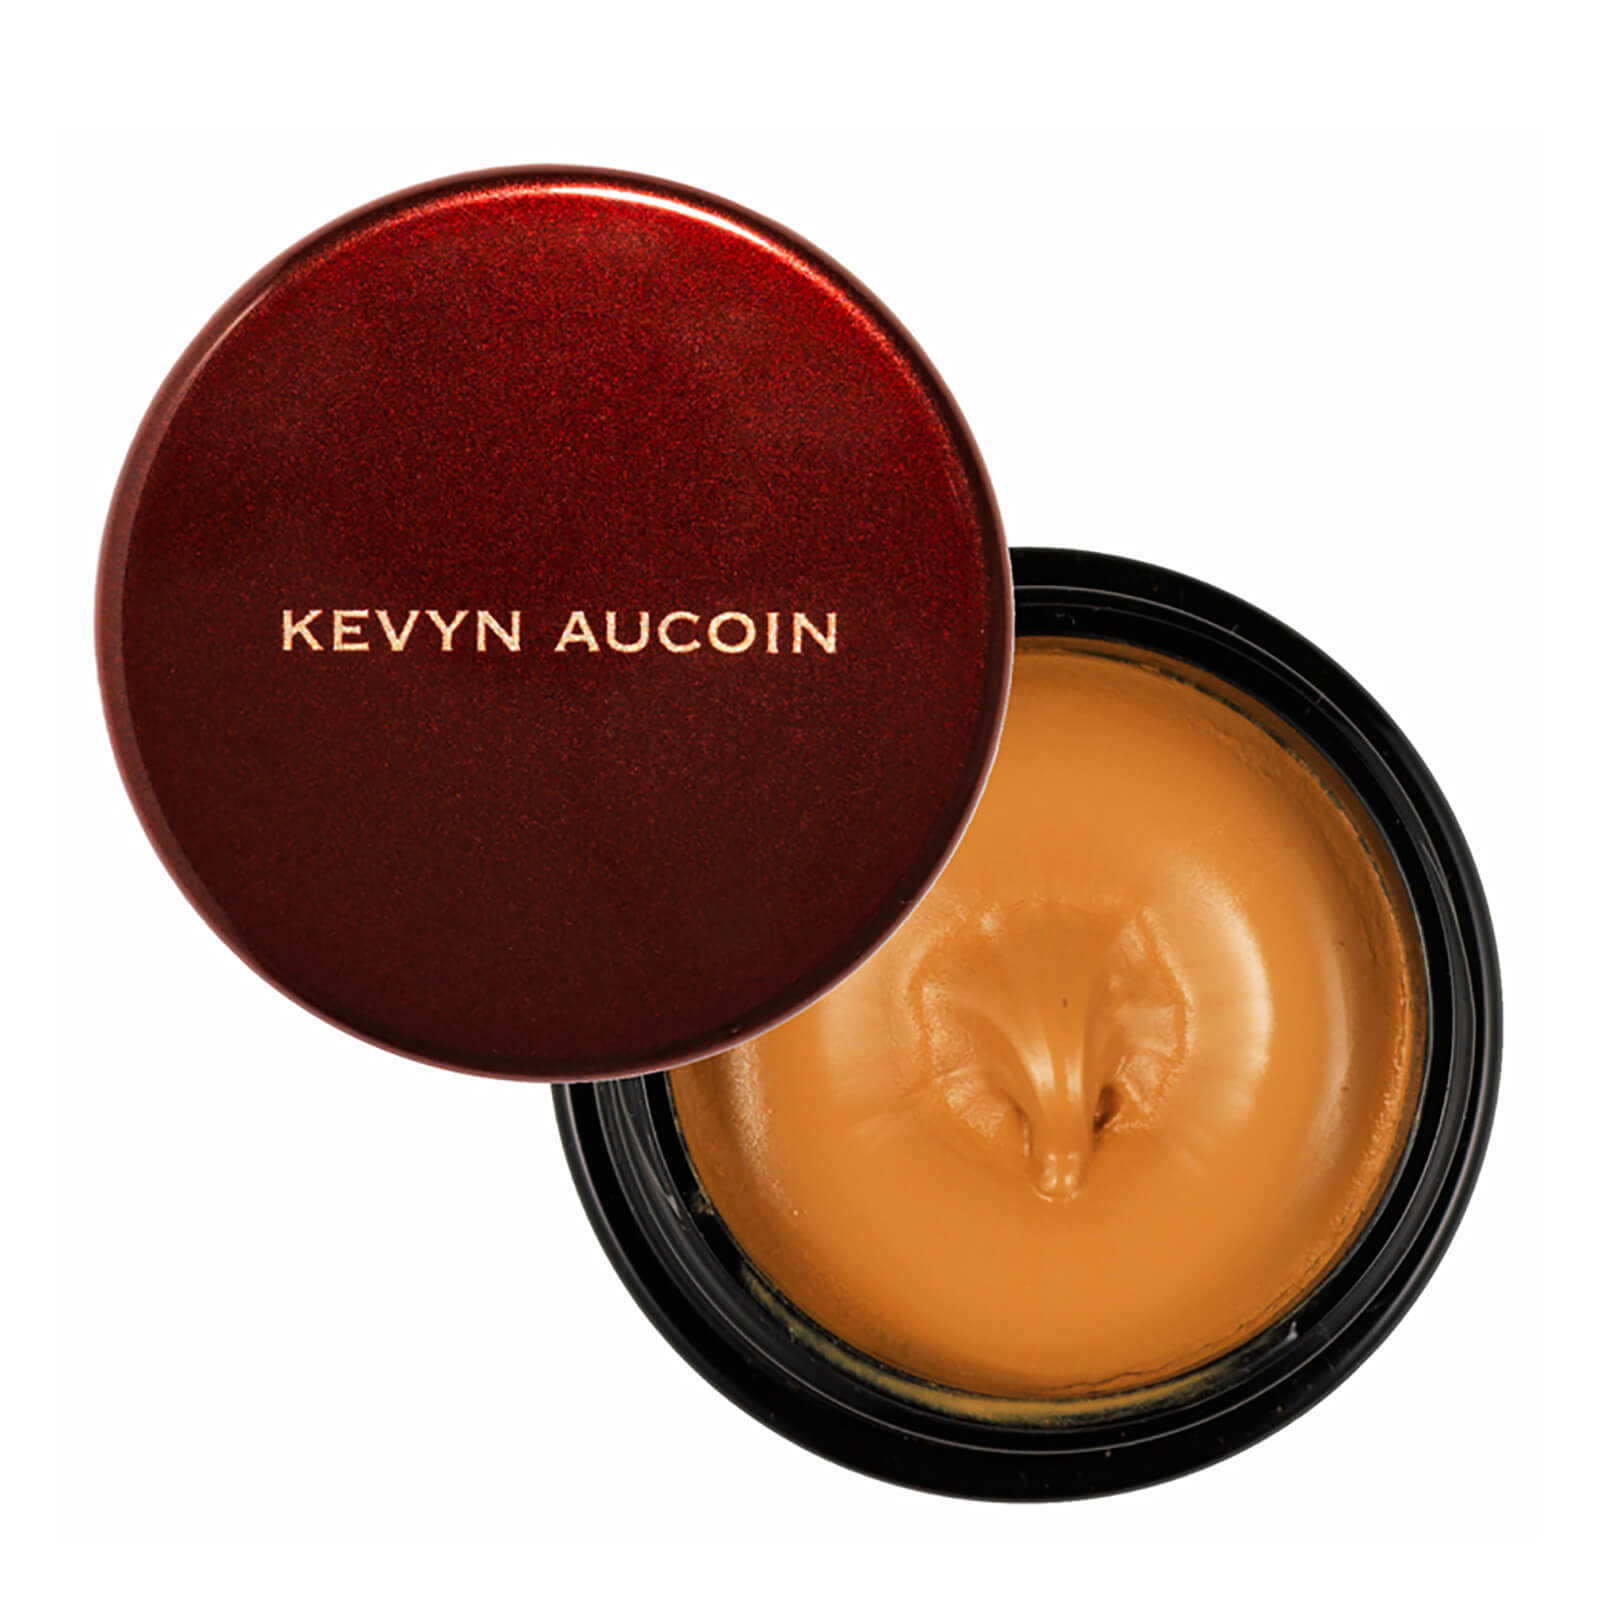 Kevyn Aucoin The Sensual Skin Enhancer (Various Shades) - SX 11